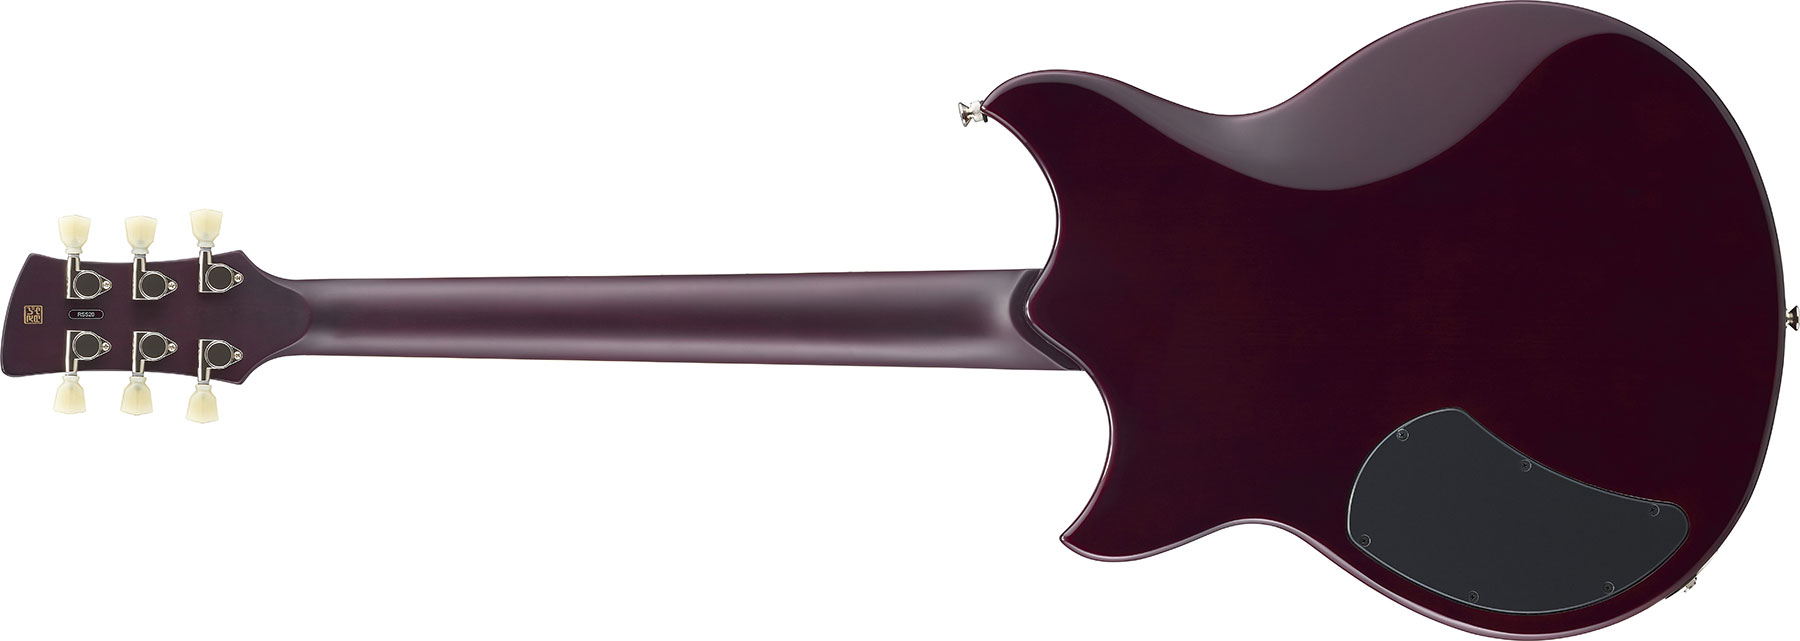 Yamaha Rss20 Revstar Standard Hh Ht Rw - Hot Merlot - Guitare Électrique Double Cut - Variation 2